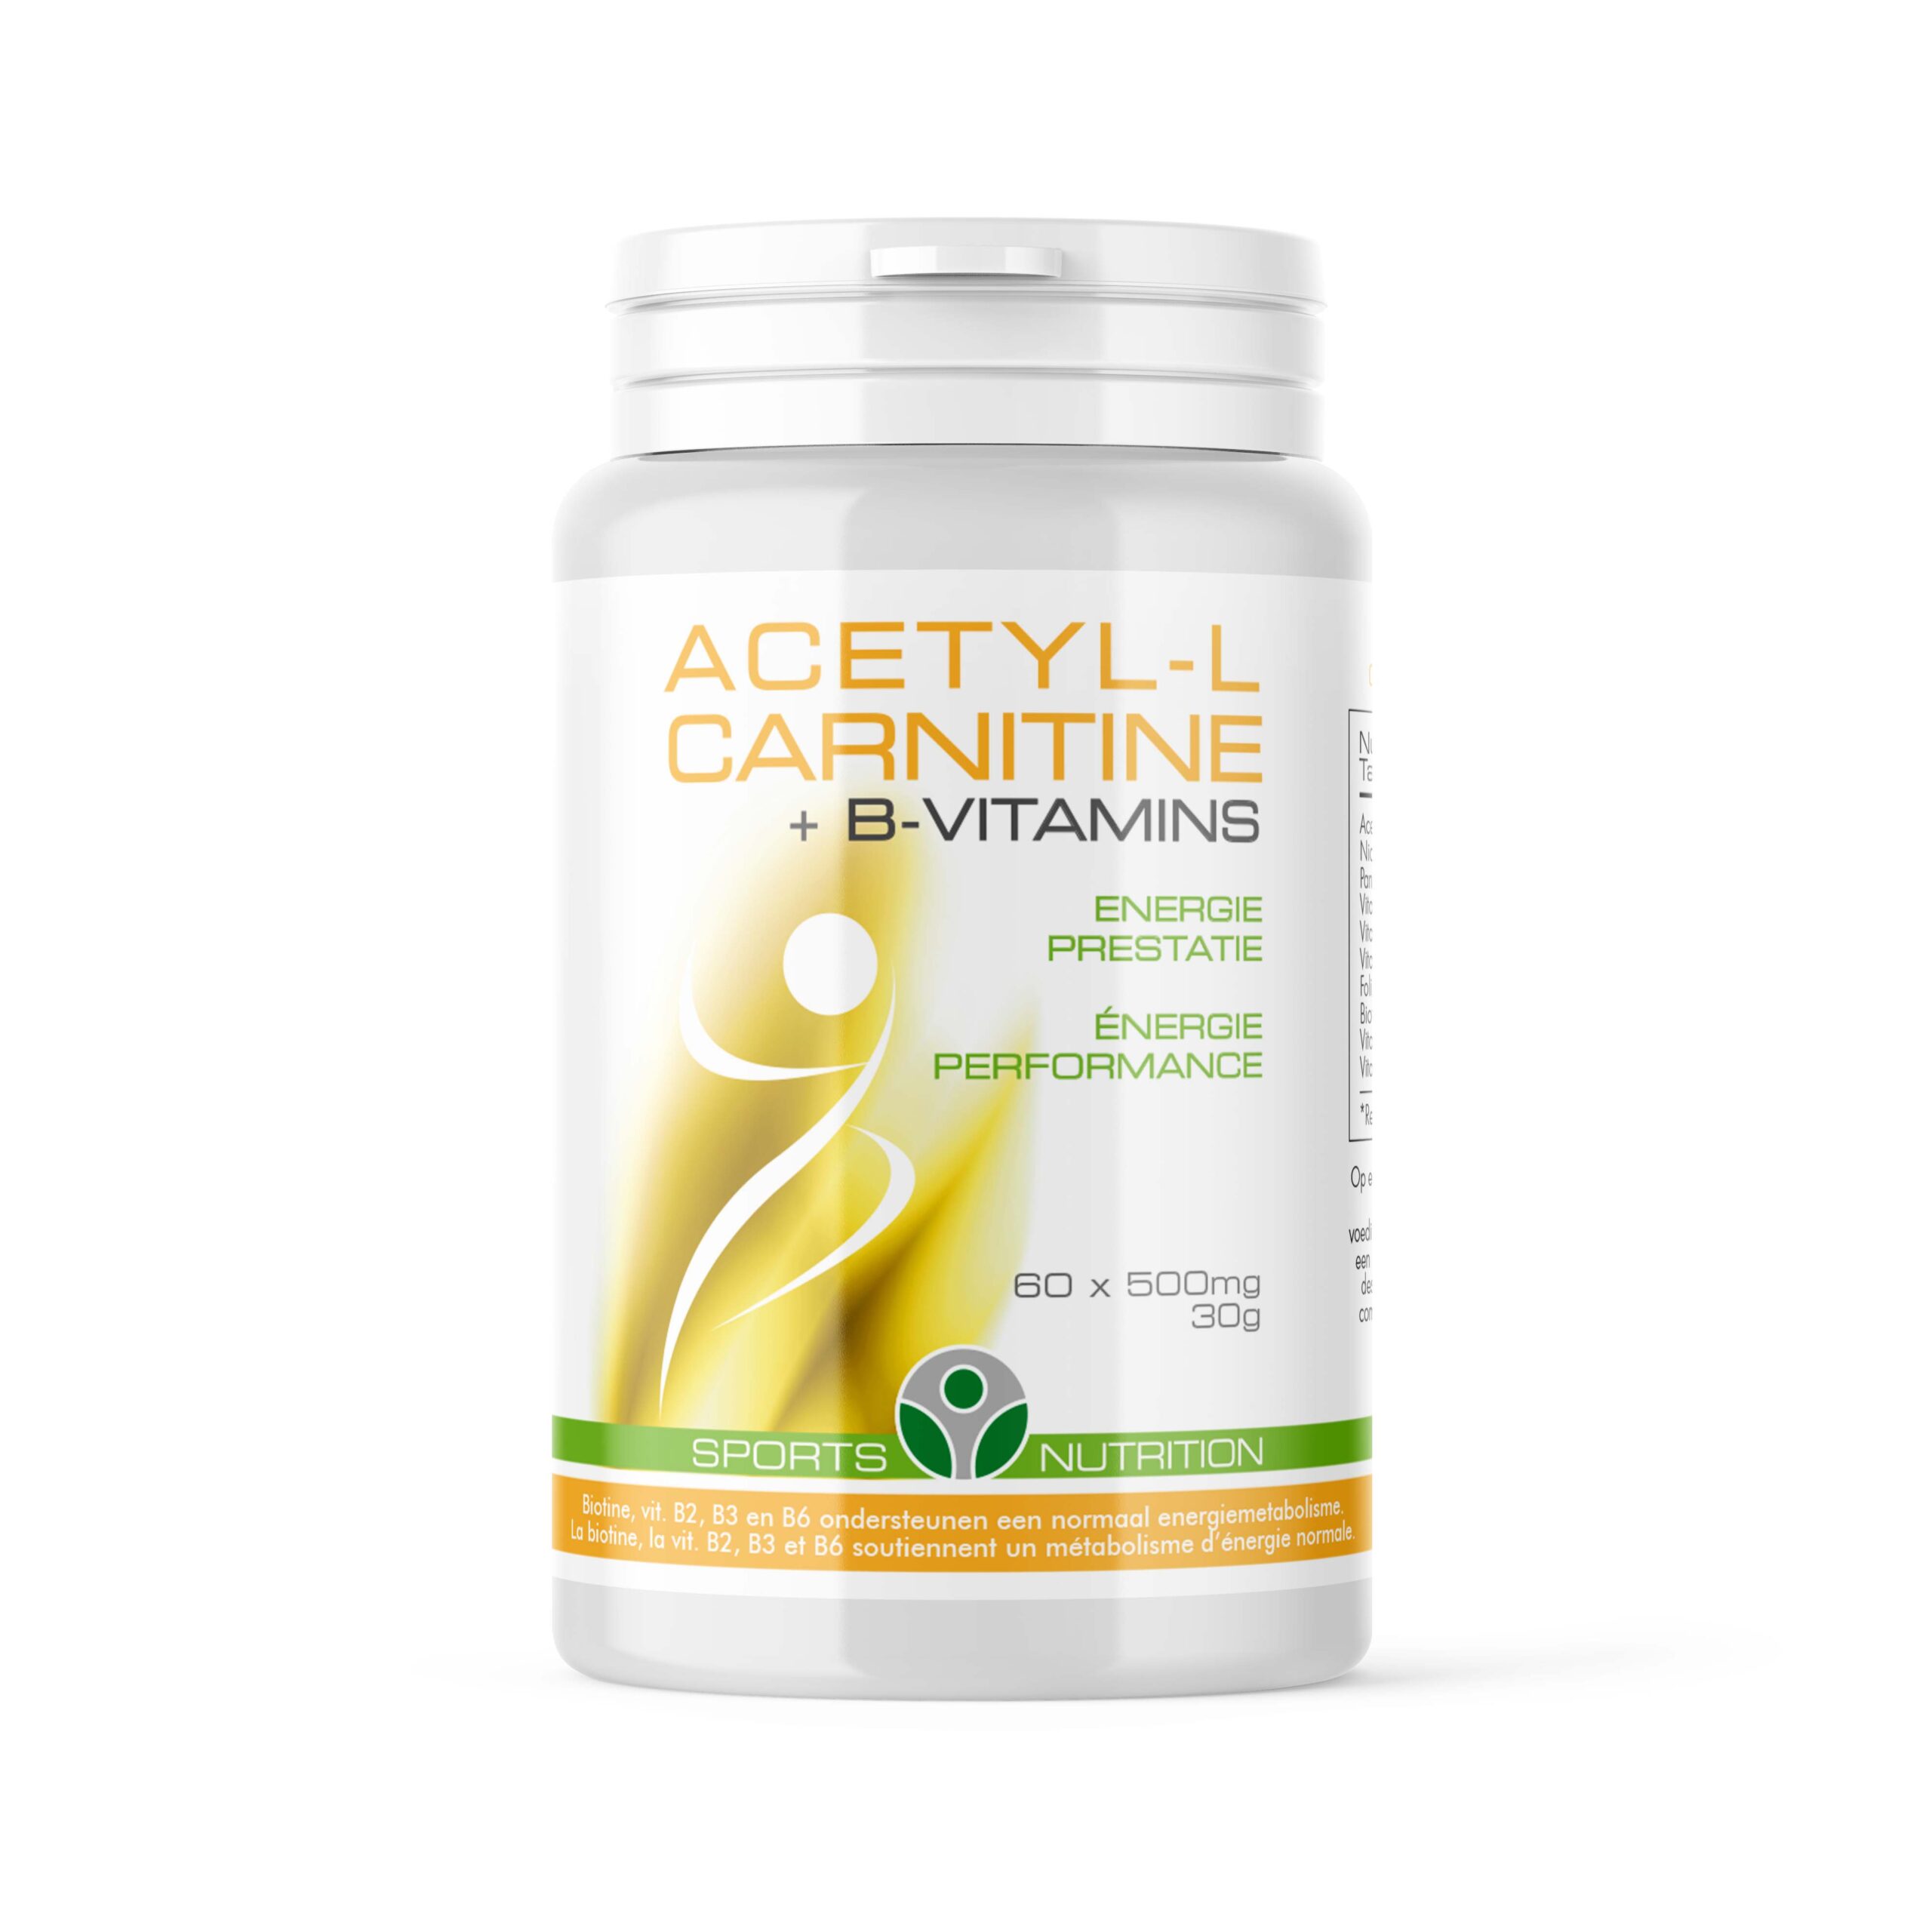 Acetyl-L-carnitine + B vitamins